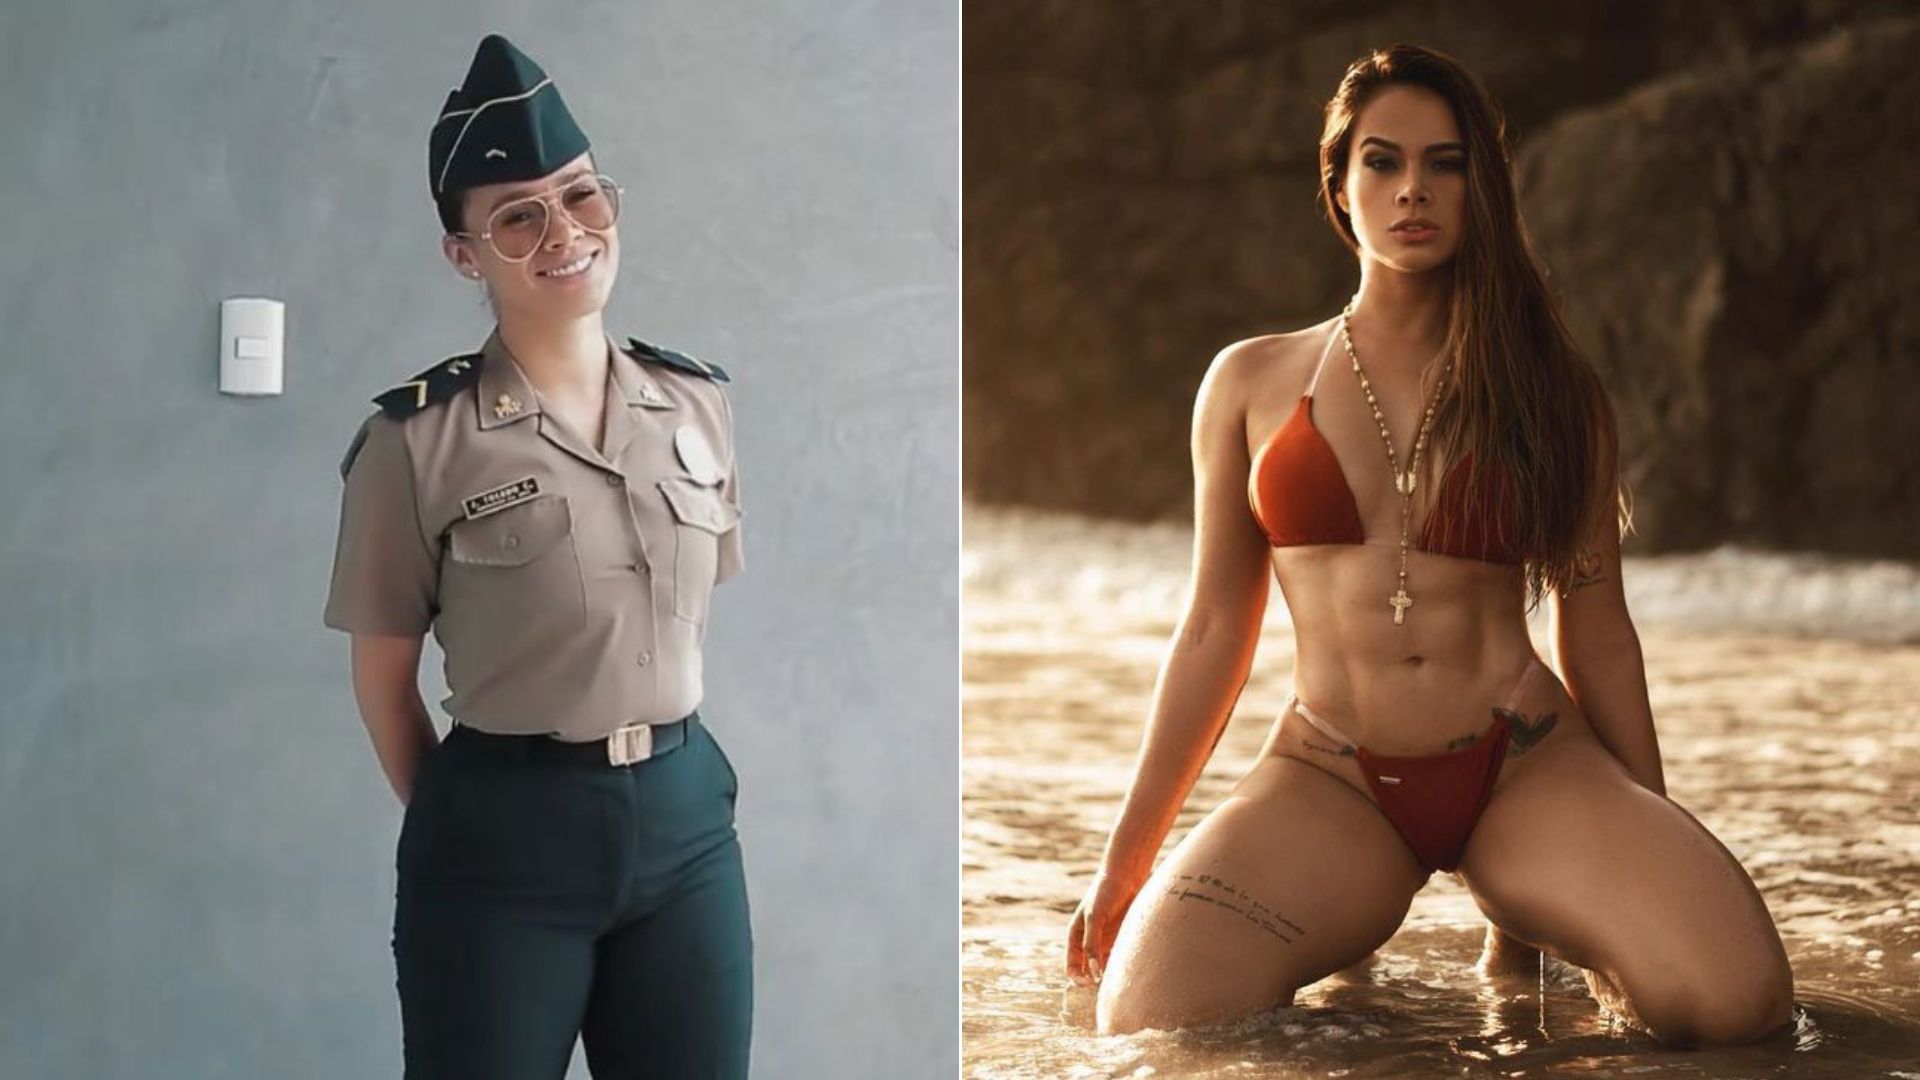 Jossmery Toledo dejó la Policía Nacional luego de hacerse conocida por un video de Tiktok y se convirtió en modelo y chica reality